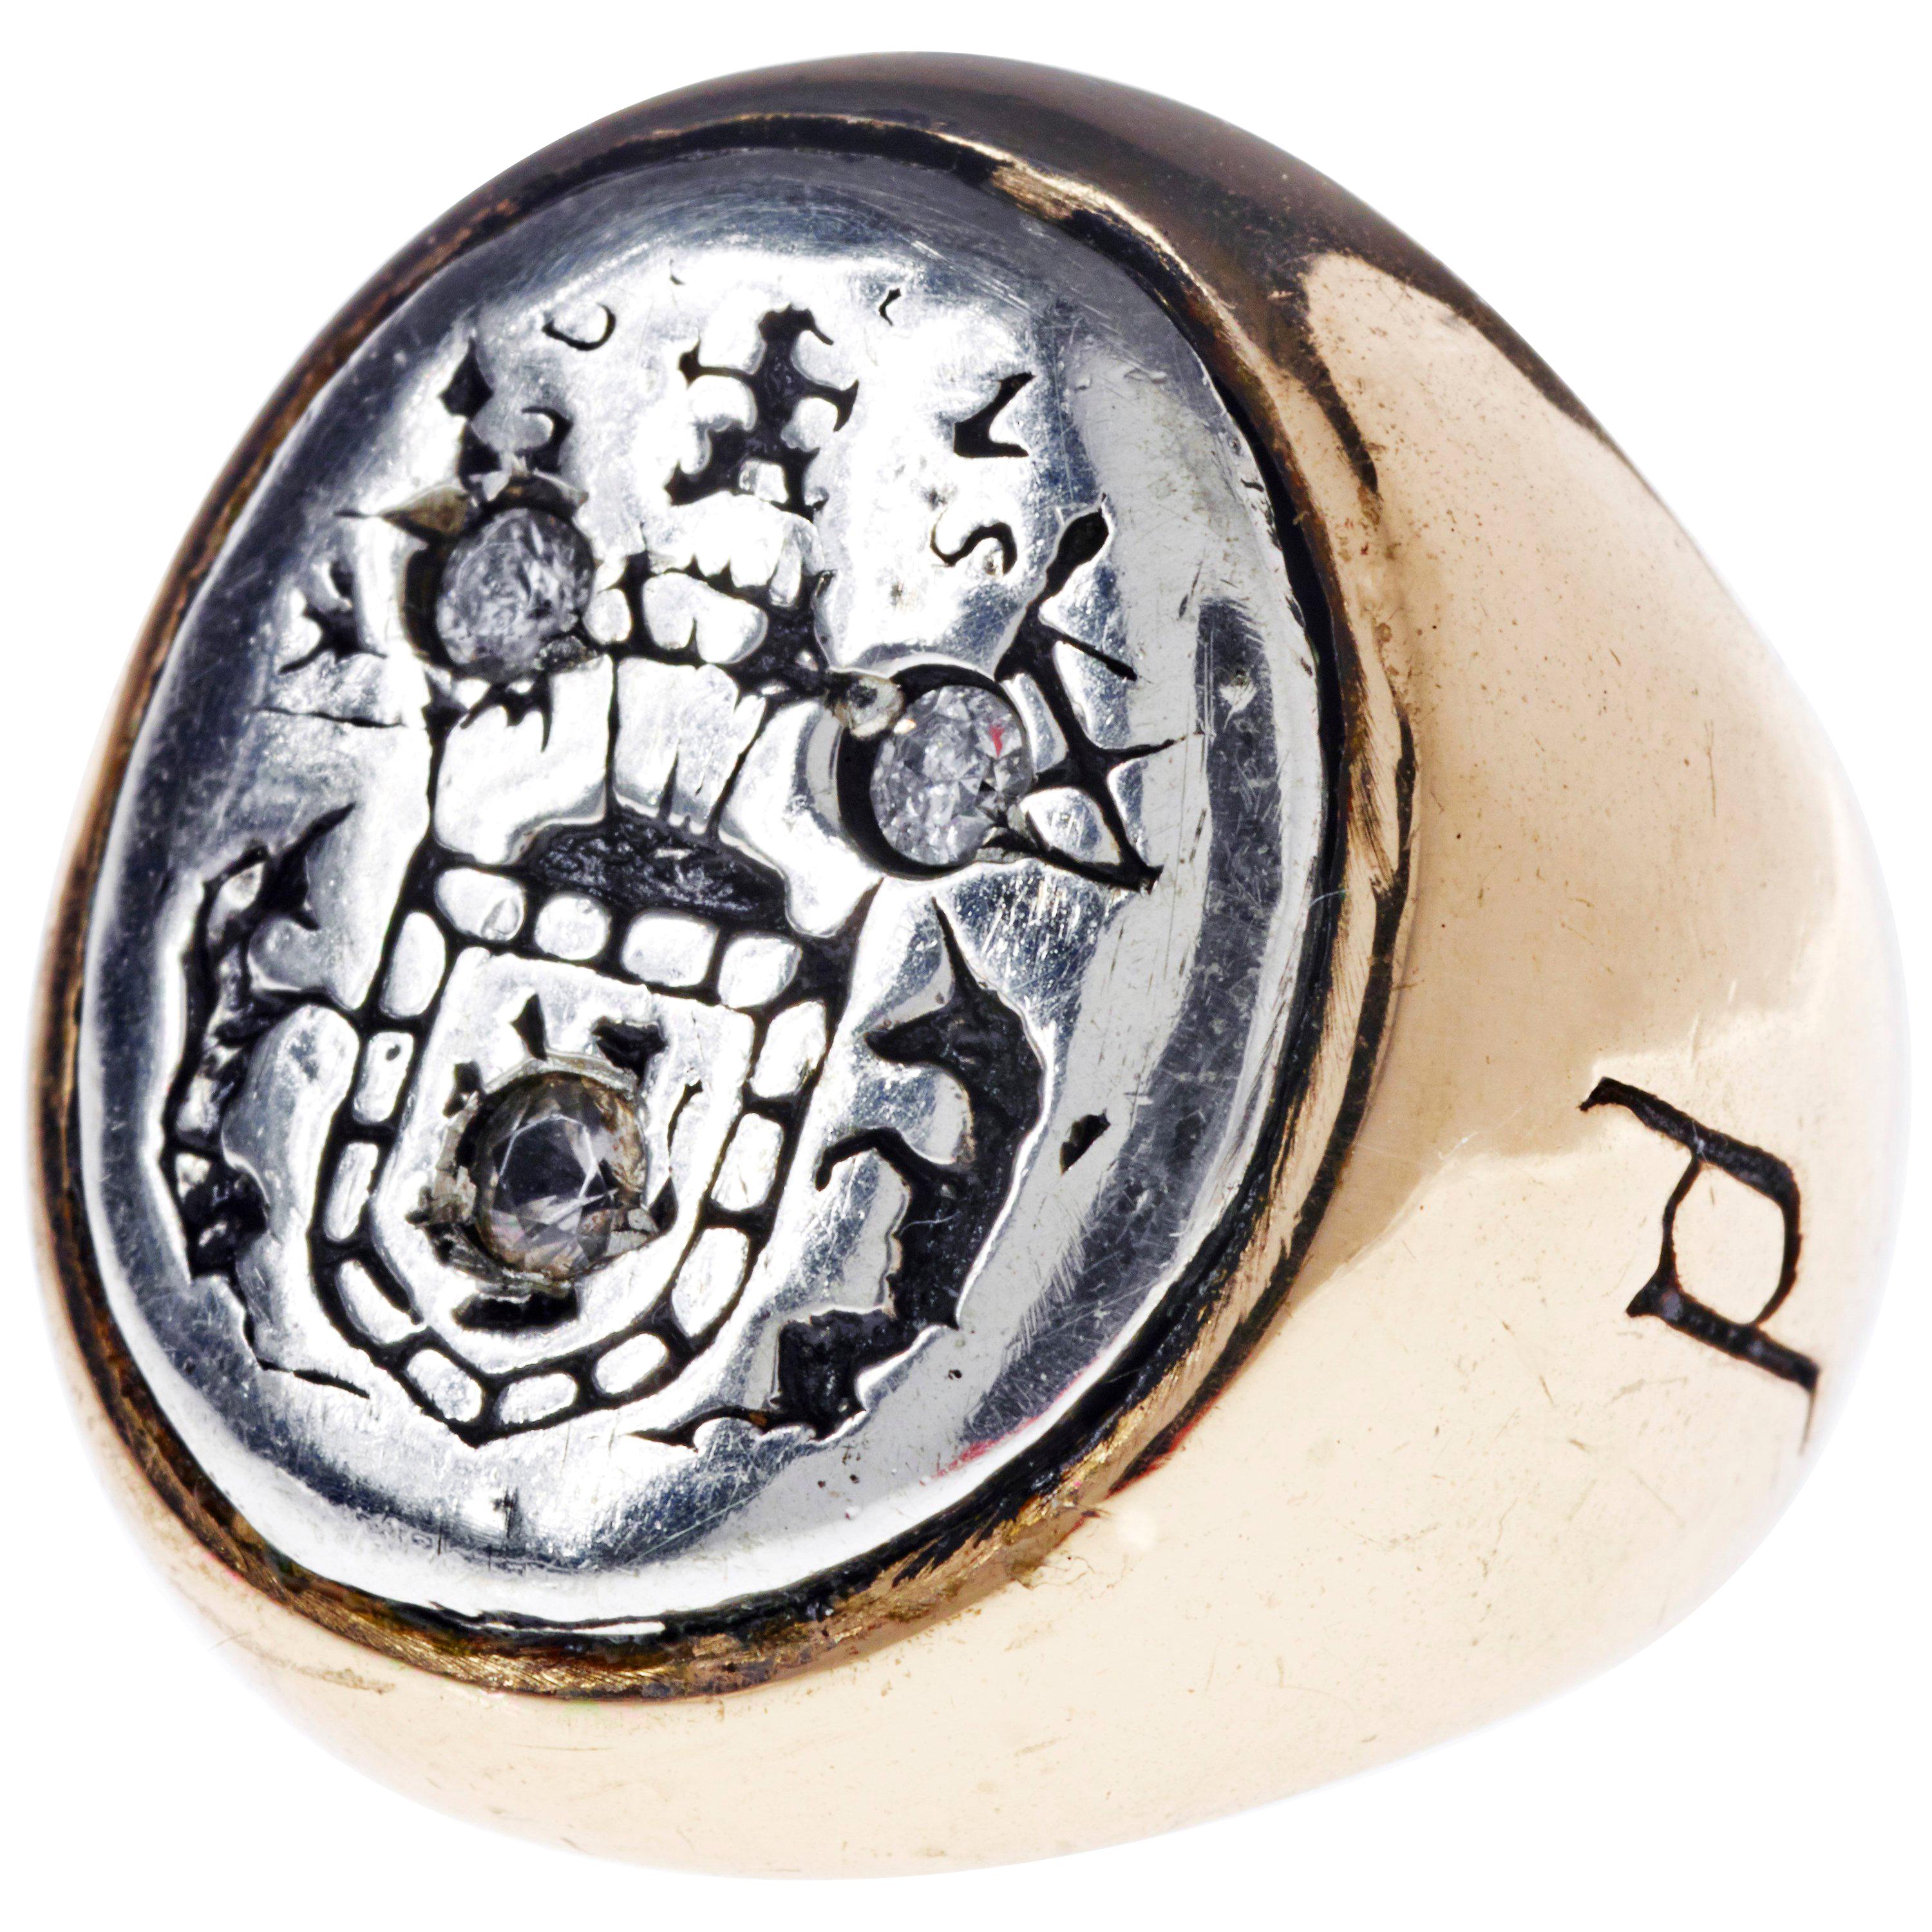 White Sapphire Crest Signet Ring Silver Bronze J DAUPHIN kann von Frauen oder Männern getragen werden.

Inspiriert durch den Ring der Königin Maria von Schottland. Goldener Siegelring; graviert; Schultern mit Blumen und Blättern verziert. Ovale